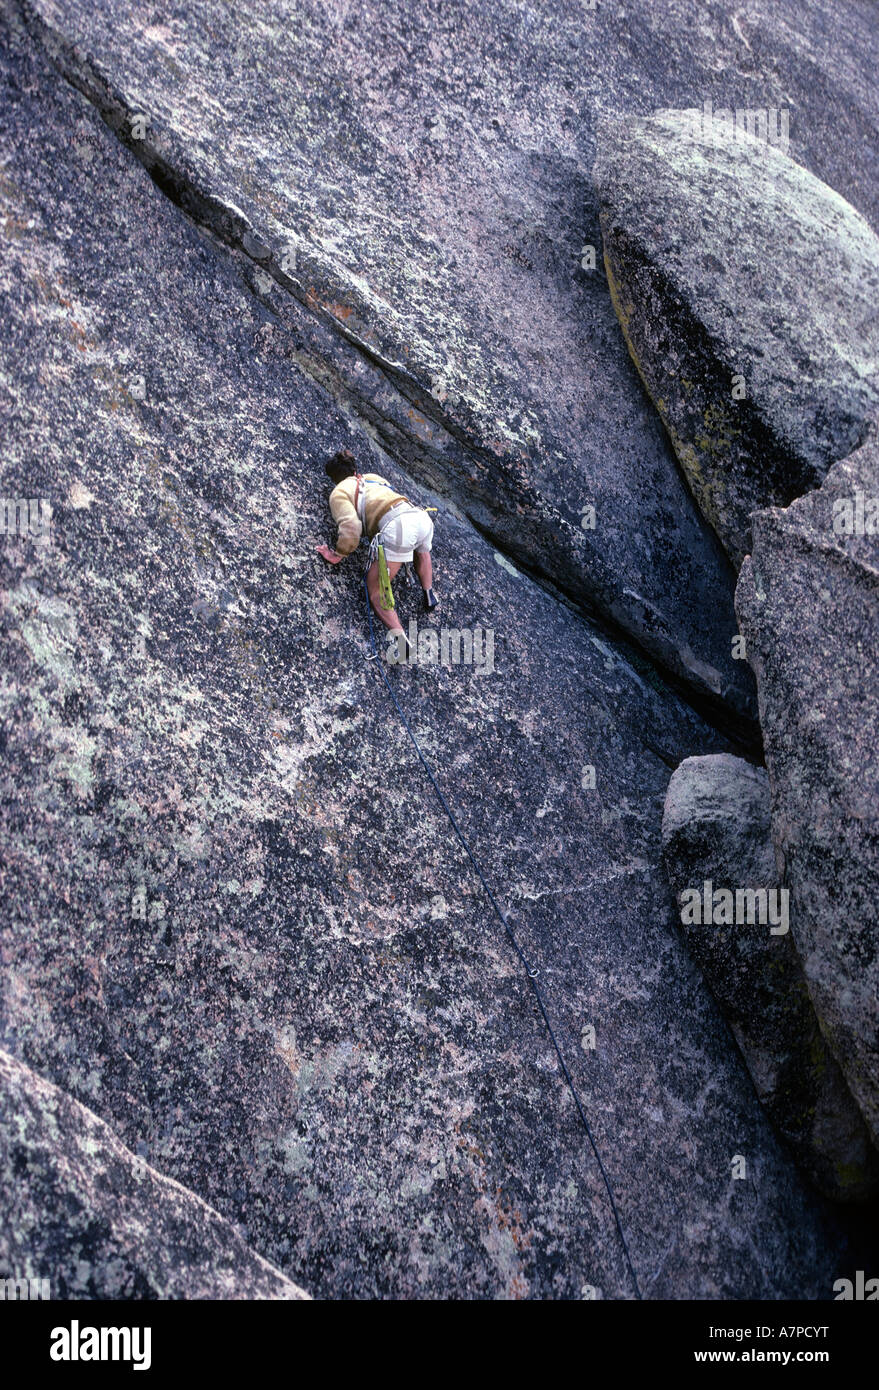 Male rock climber ascending granite face El Gran Trono Blanco The Great White Throne area Sonora Mexico North America Stock Photo